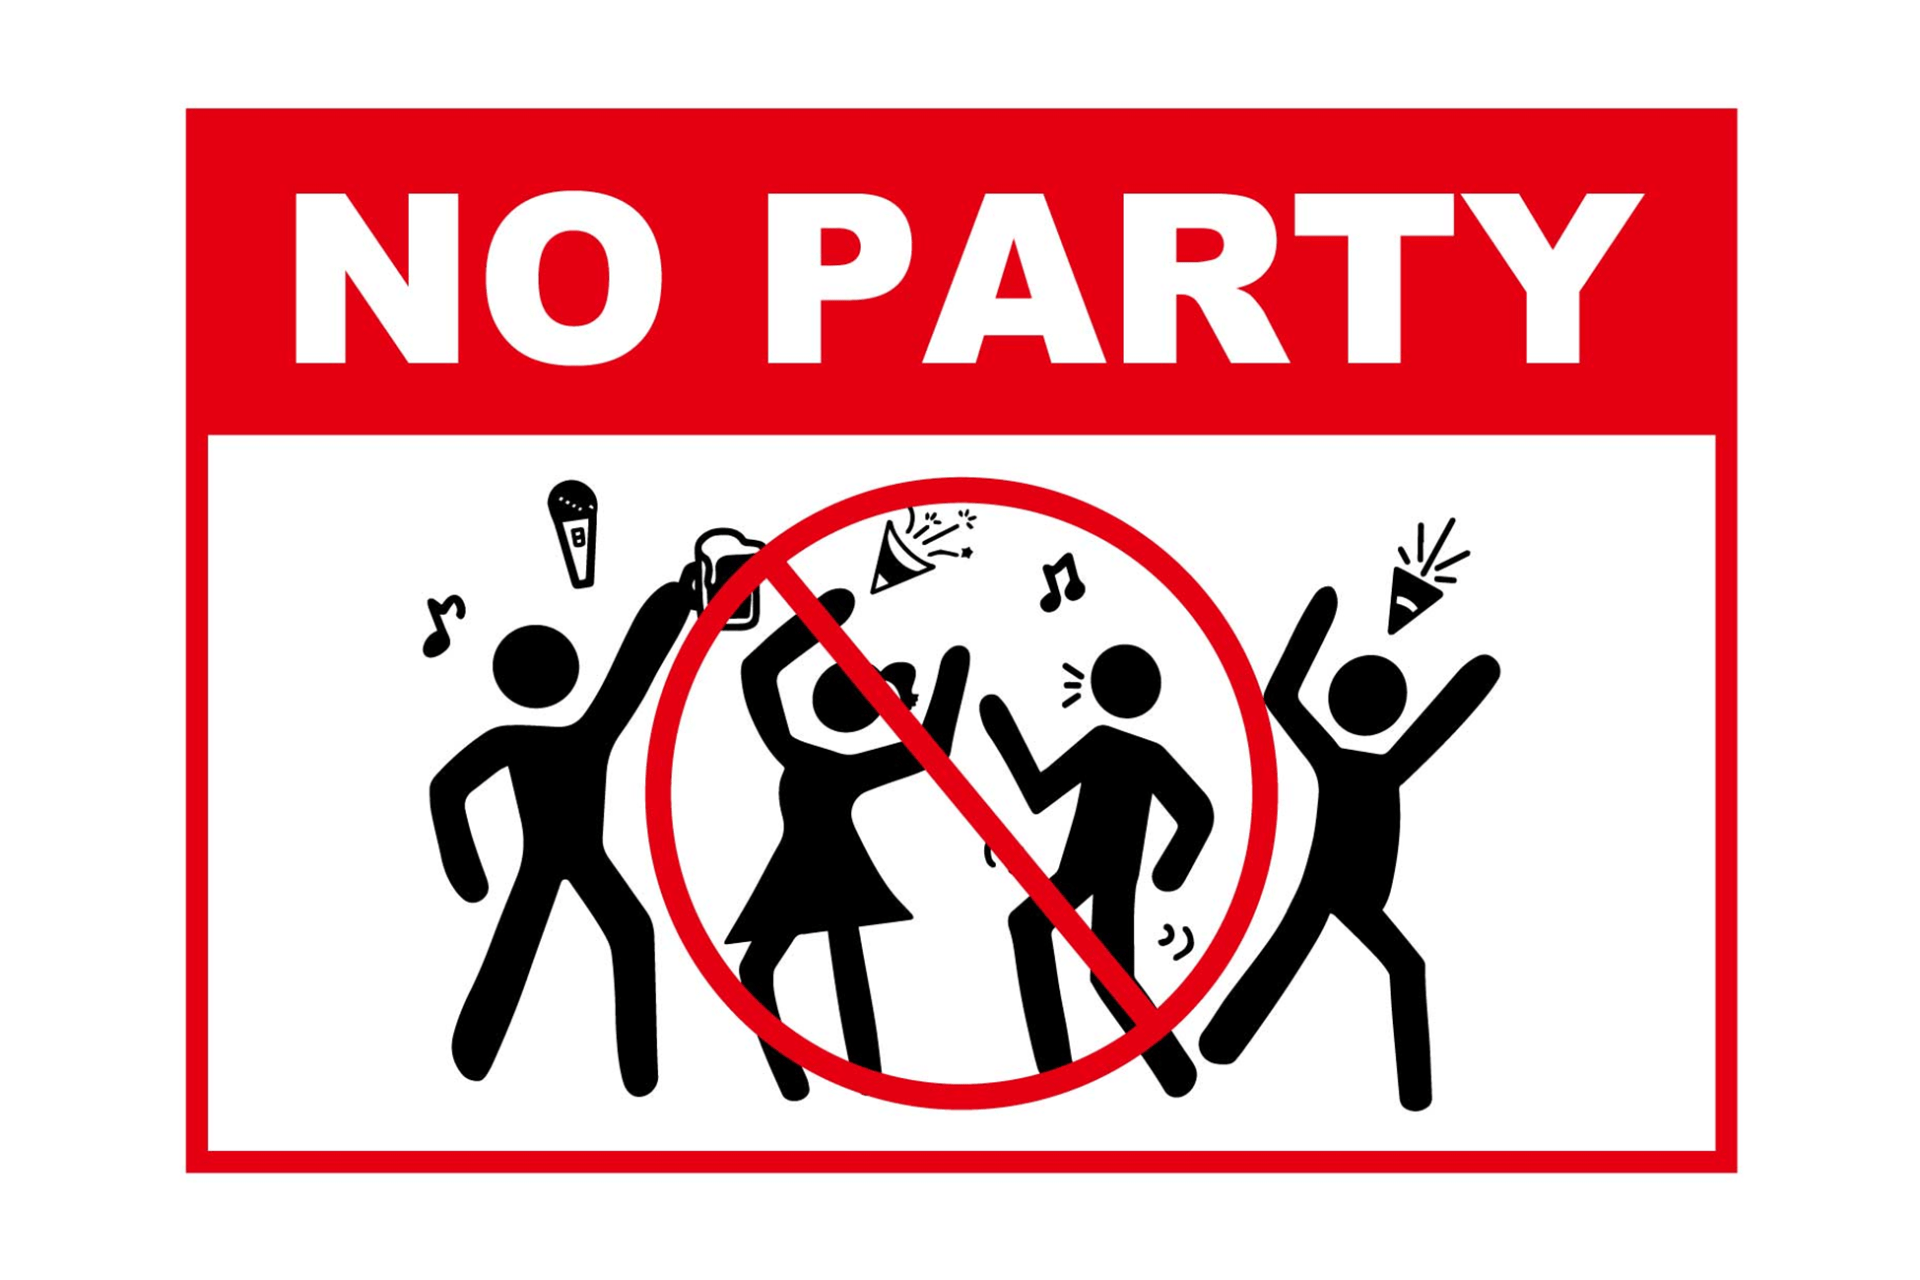 エアビーがパーティー開催を禁止